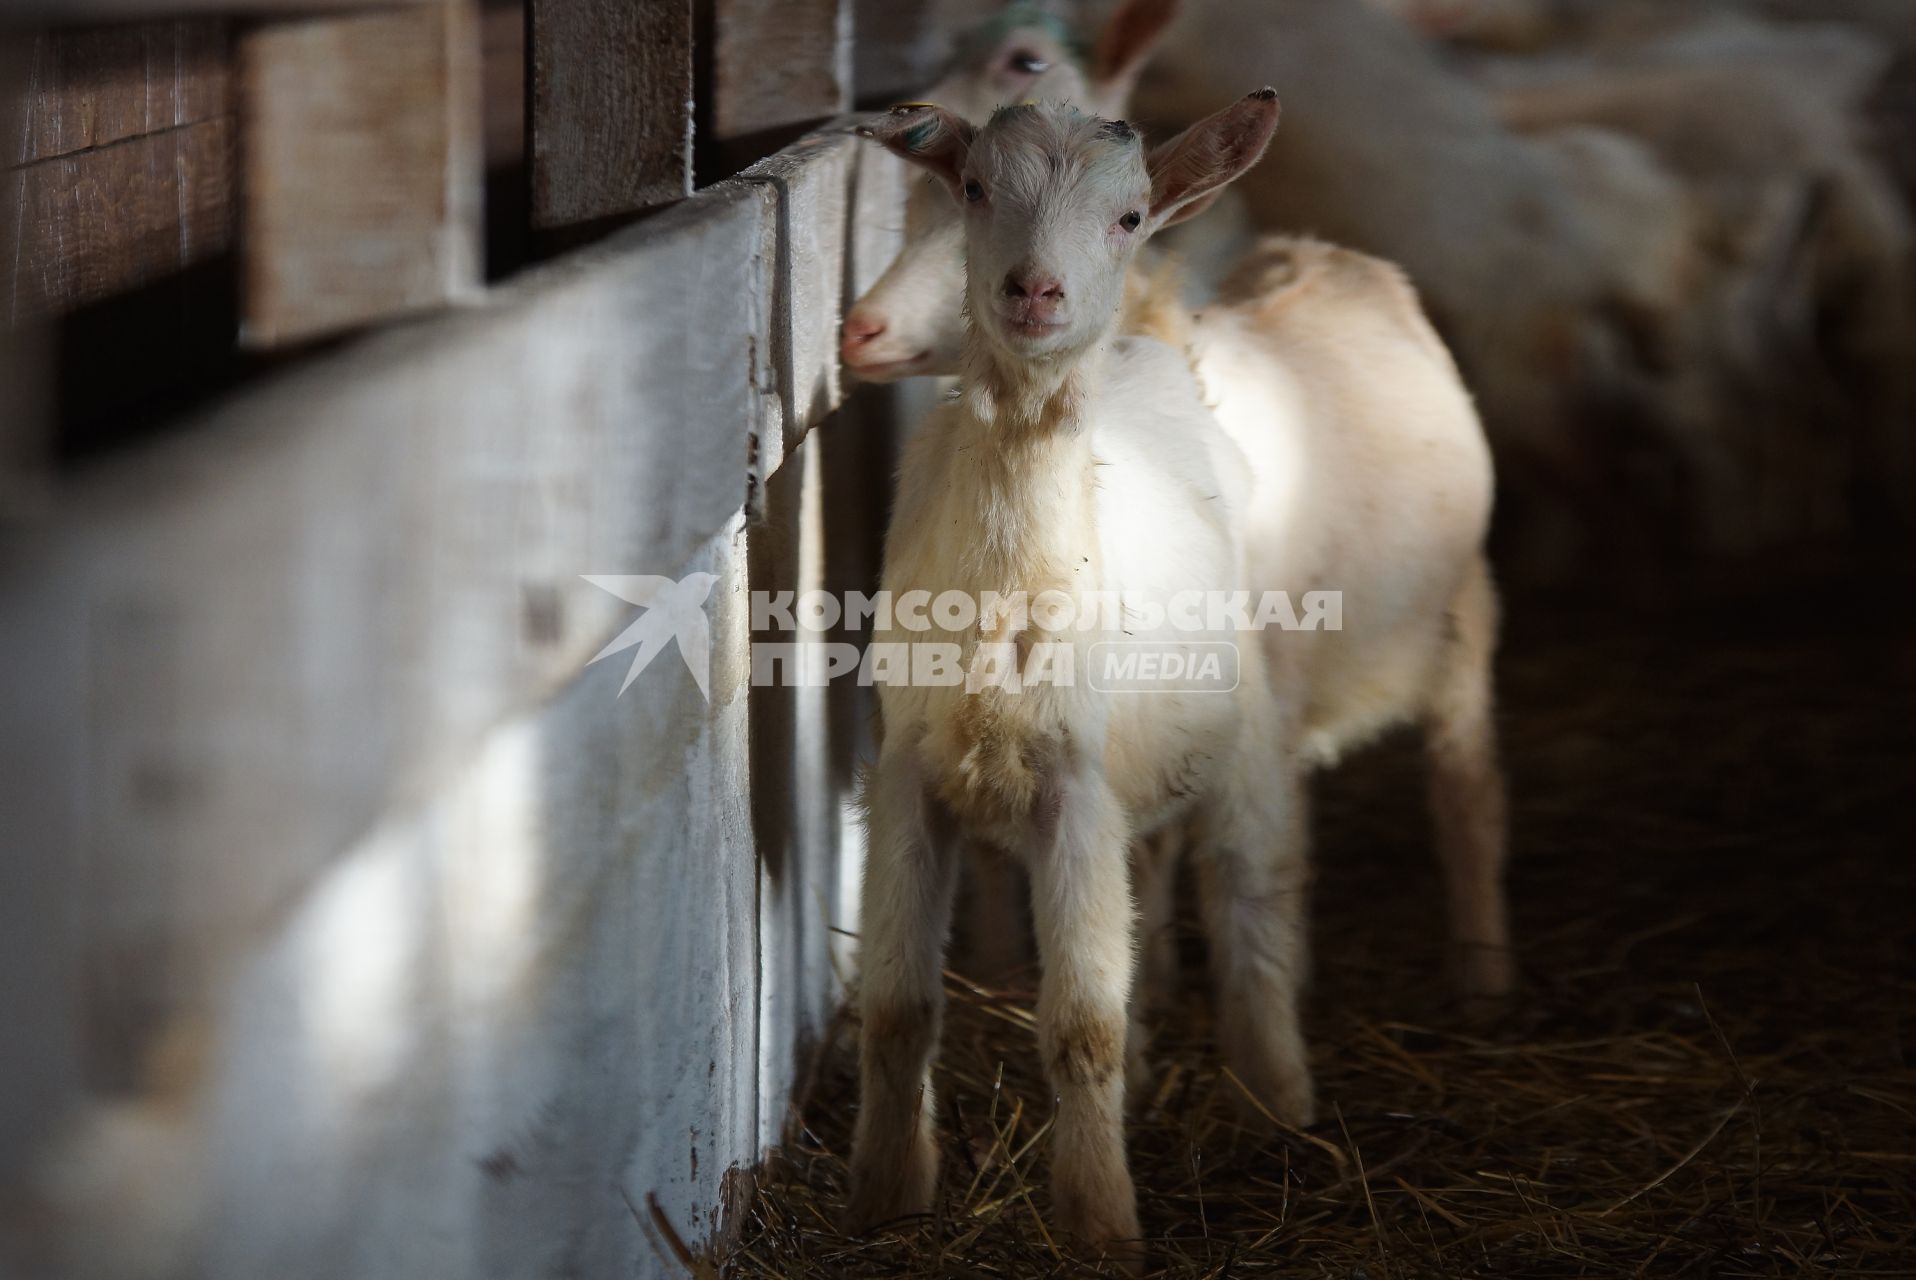 загон для козлят, на сельхозпредприятии по выращиванию коз и производству козьего молока – научно-производственный кооператив «Ачитский»